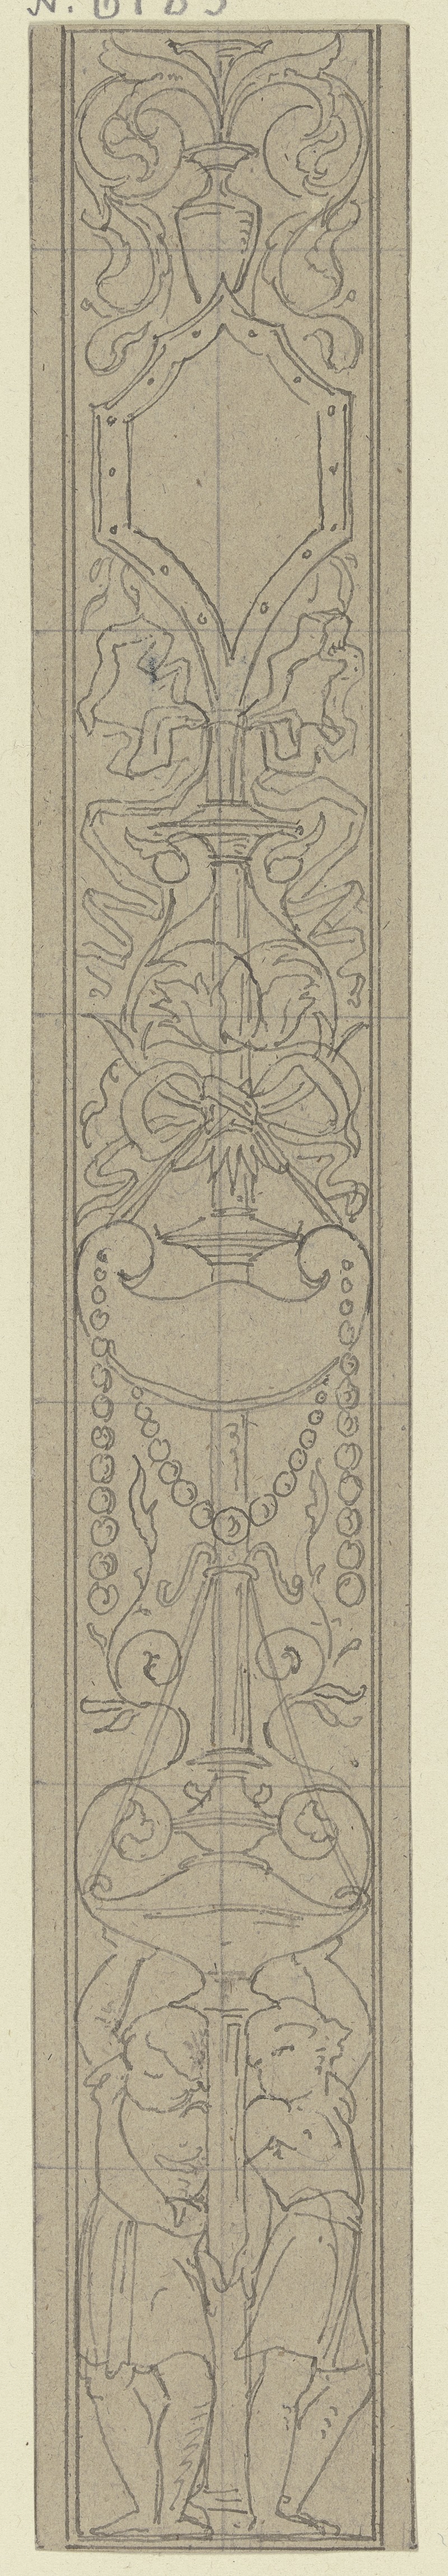 Eduard von Steinle - Ornament zur Einfassung der Veitschen Freskobilder im Städelschen Kunstinstitut